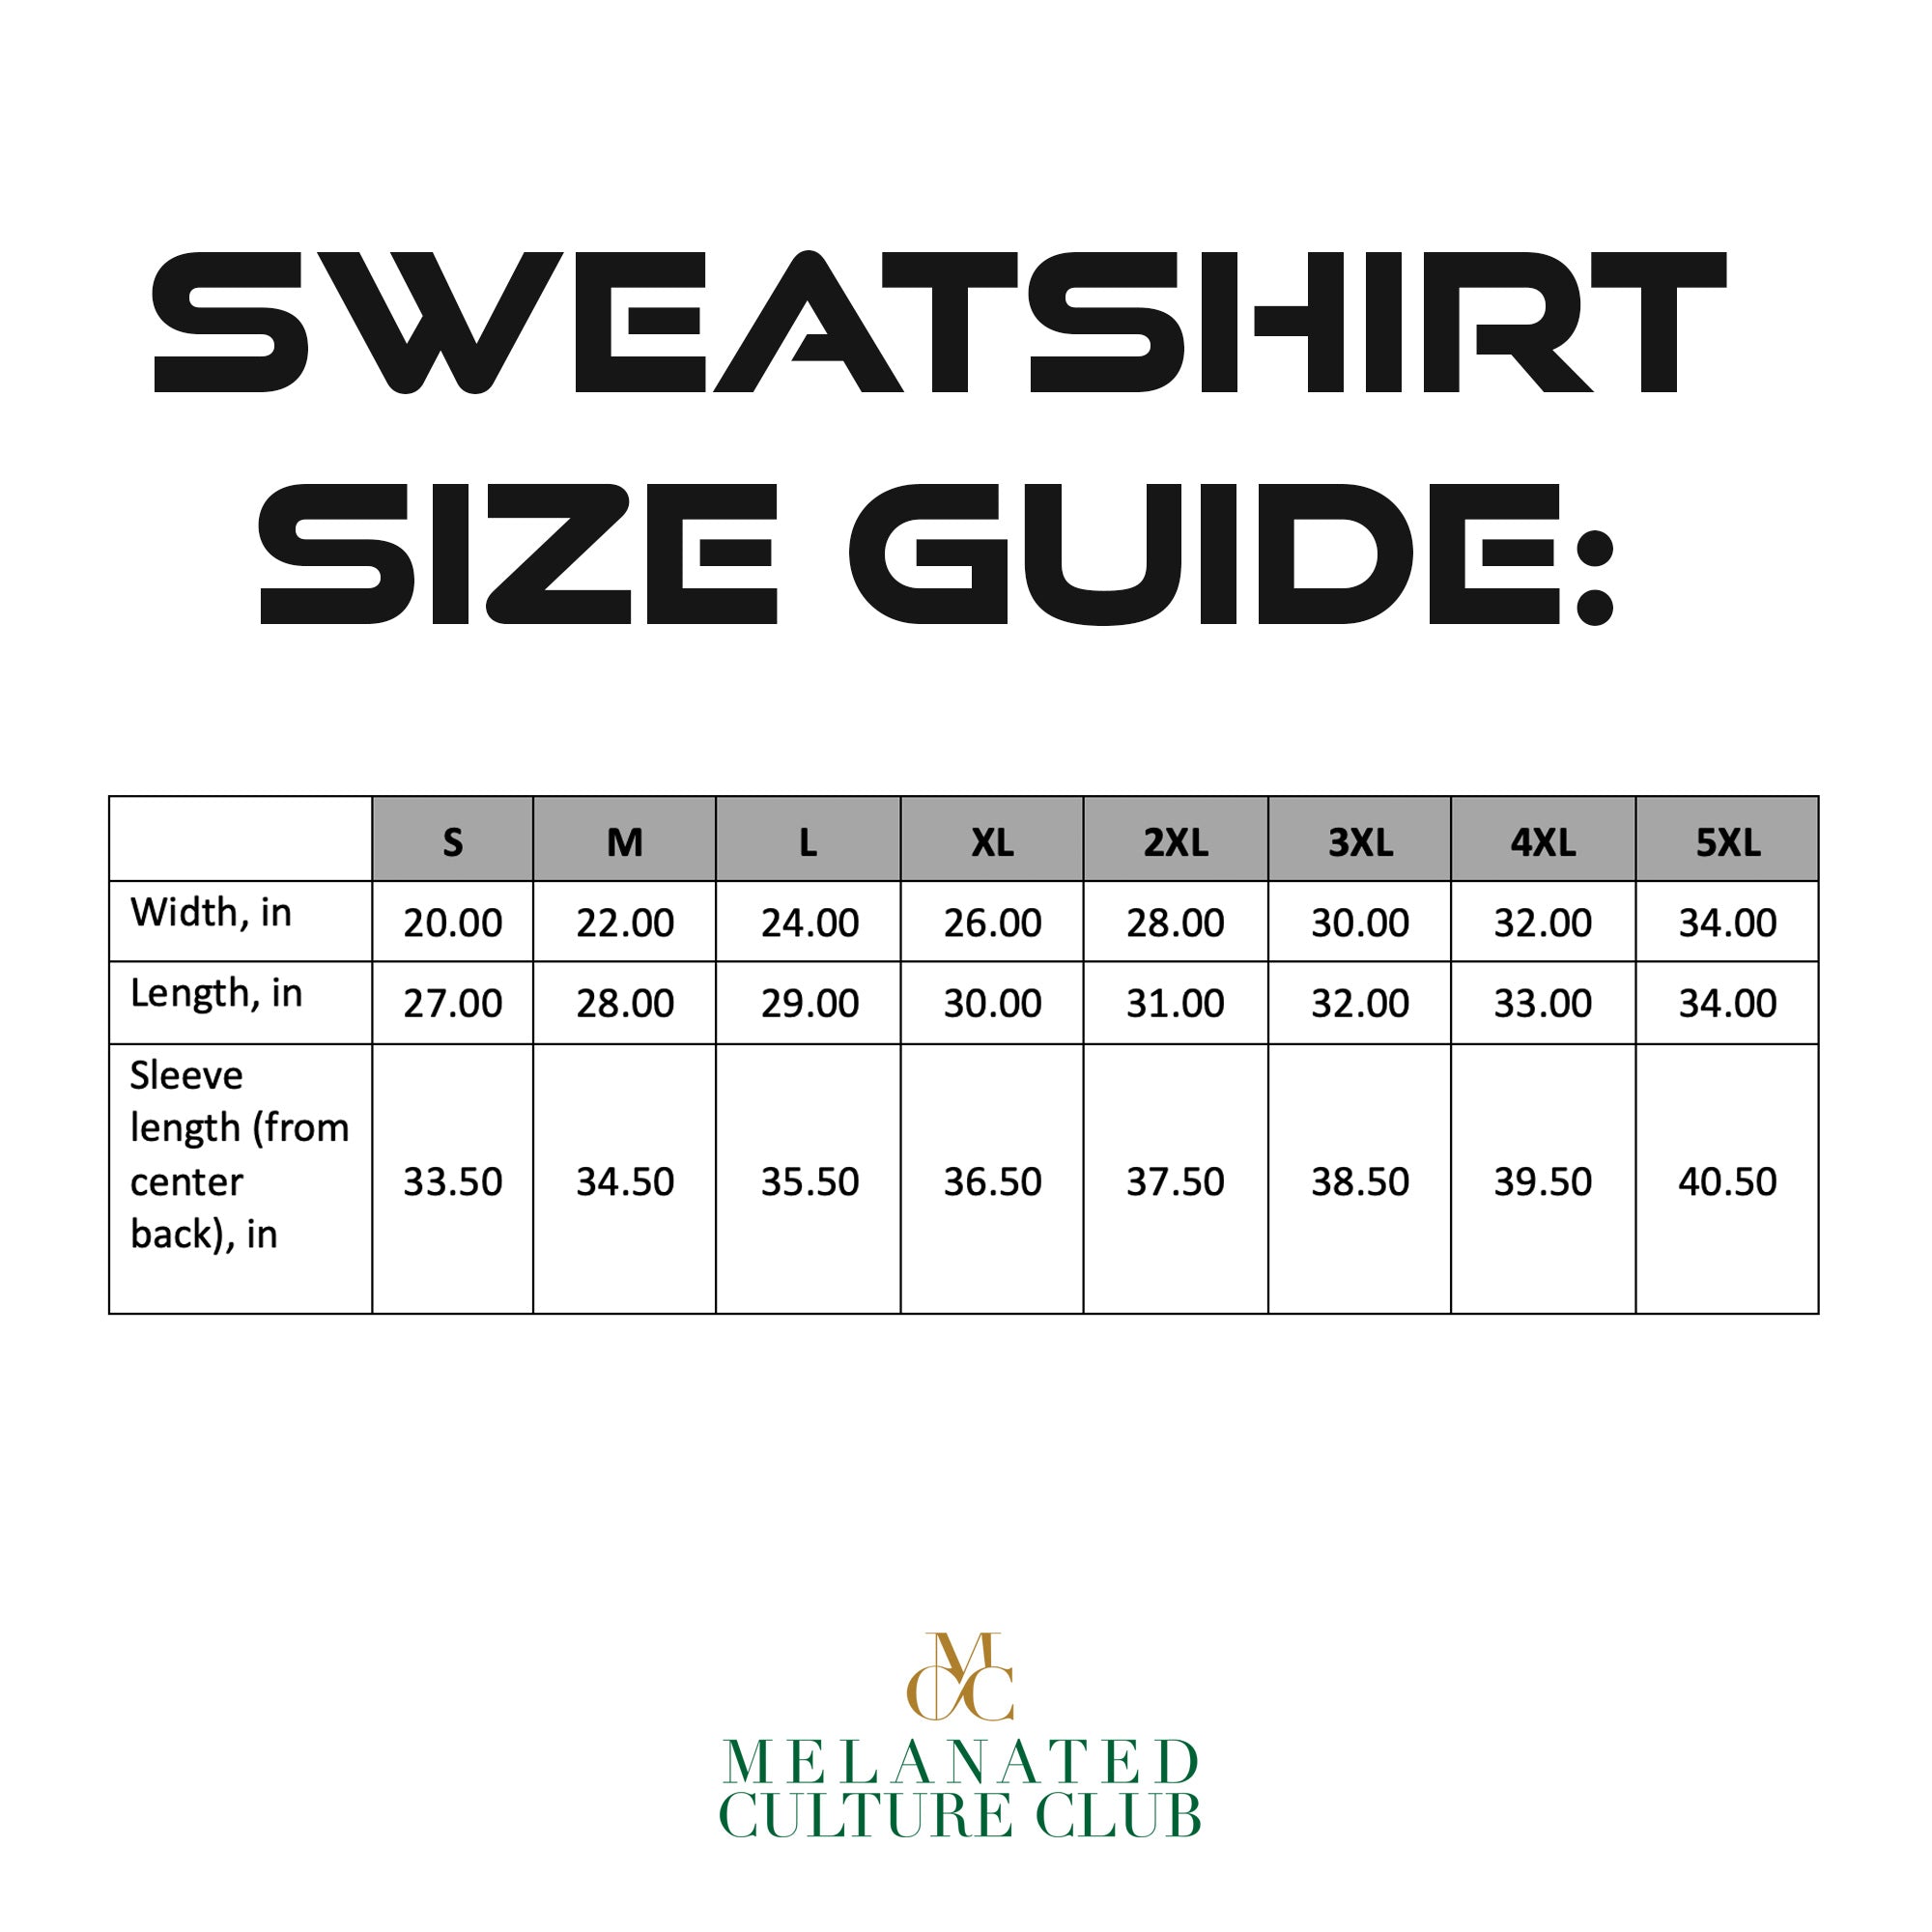 Sweatshirt size guide.